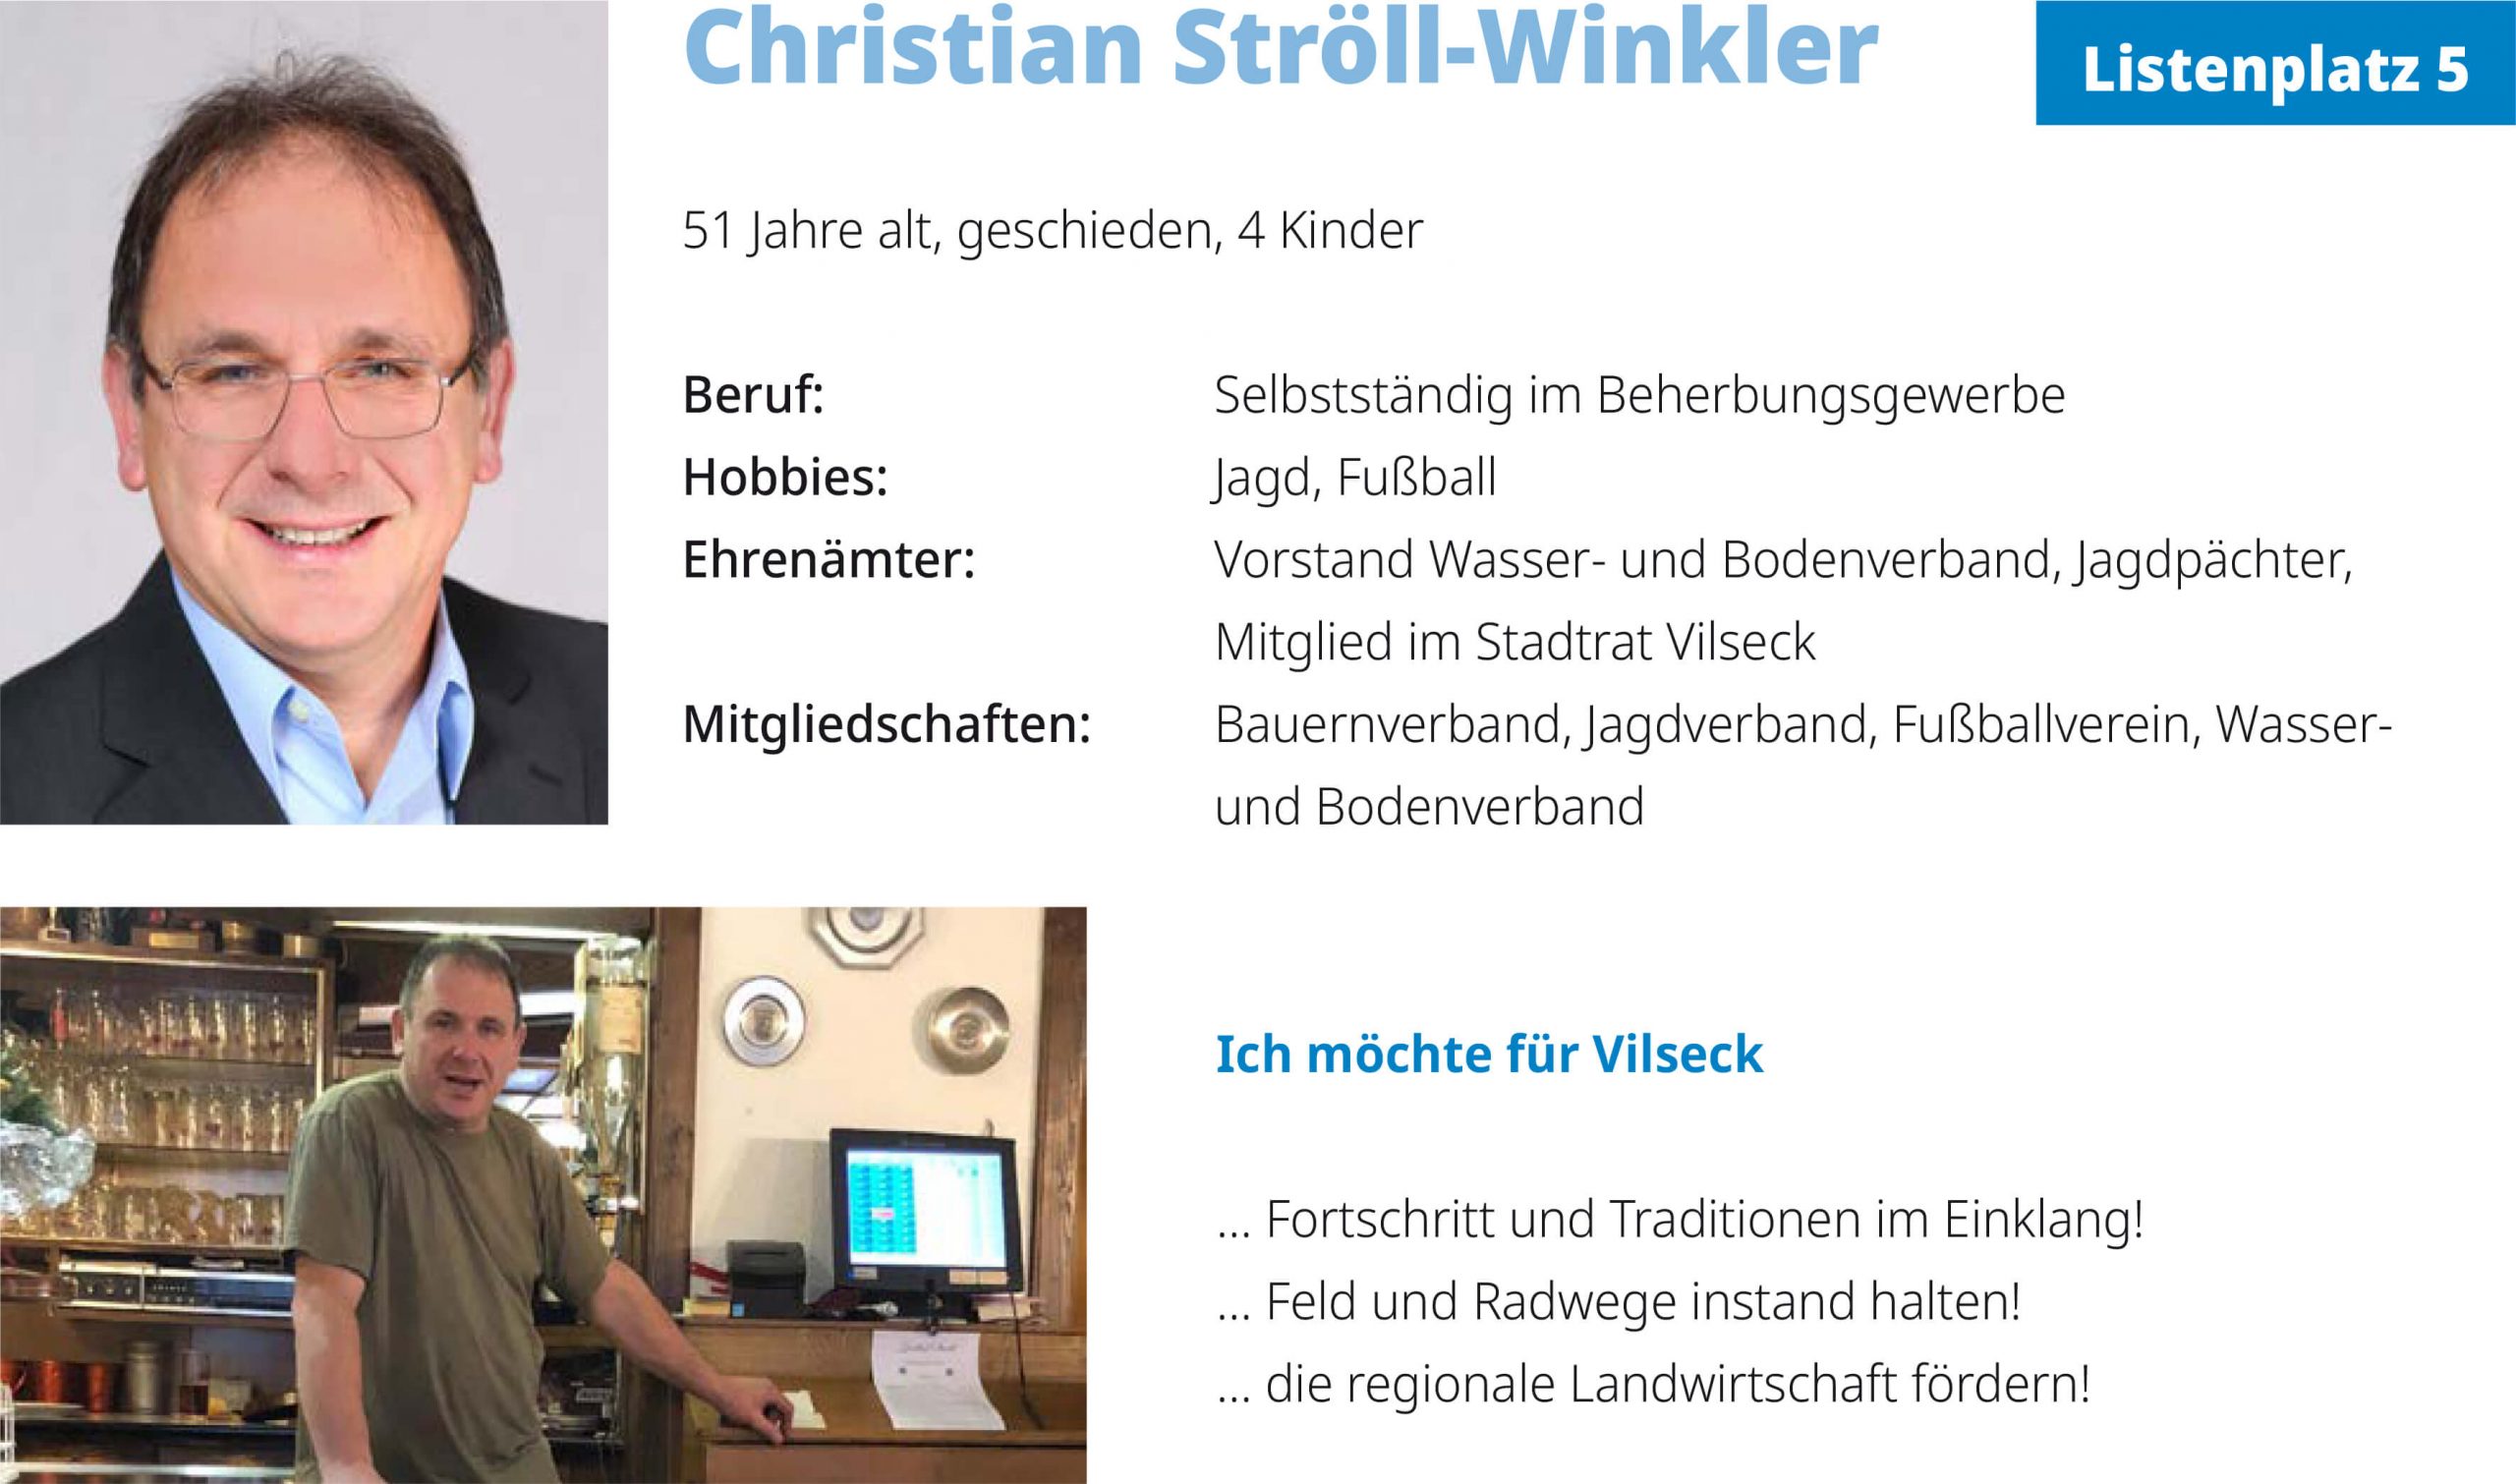 Christian Ströll-Winkler